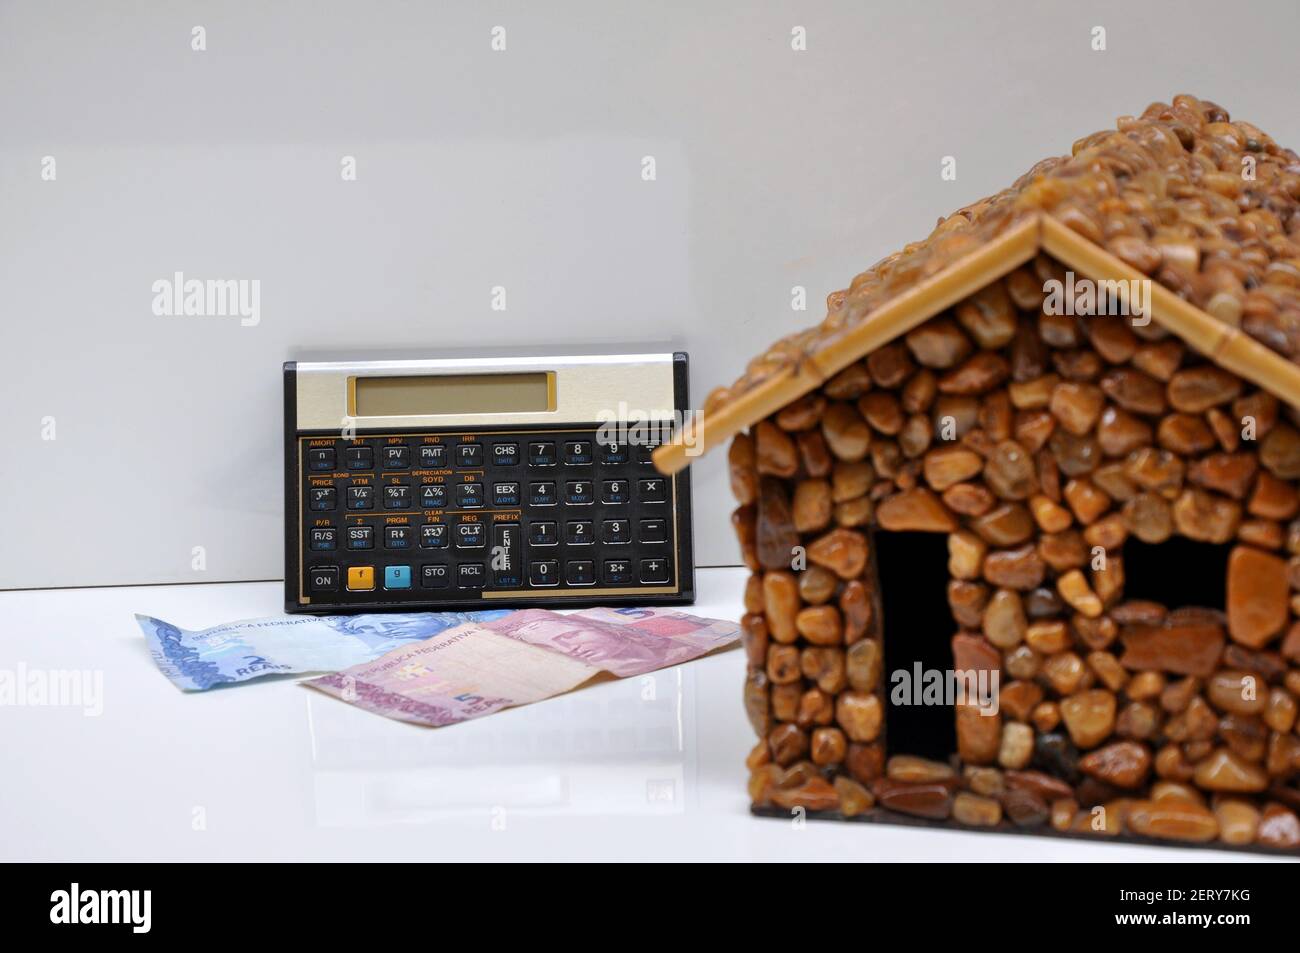 Stone House, Stone House avec calculatrice financière et scientifique et billets d'argent du Brésil, Amérique du Sud, avec une attention sélective sur l'arrière-plan Banque D'Images